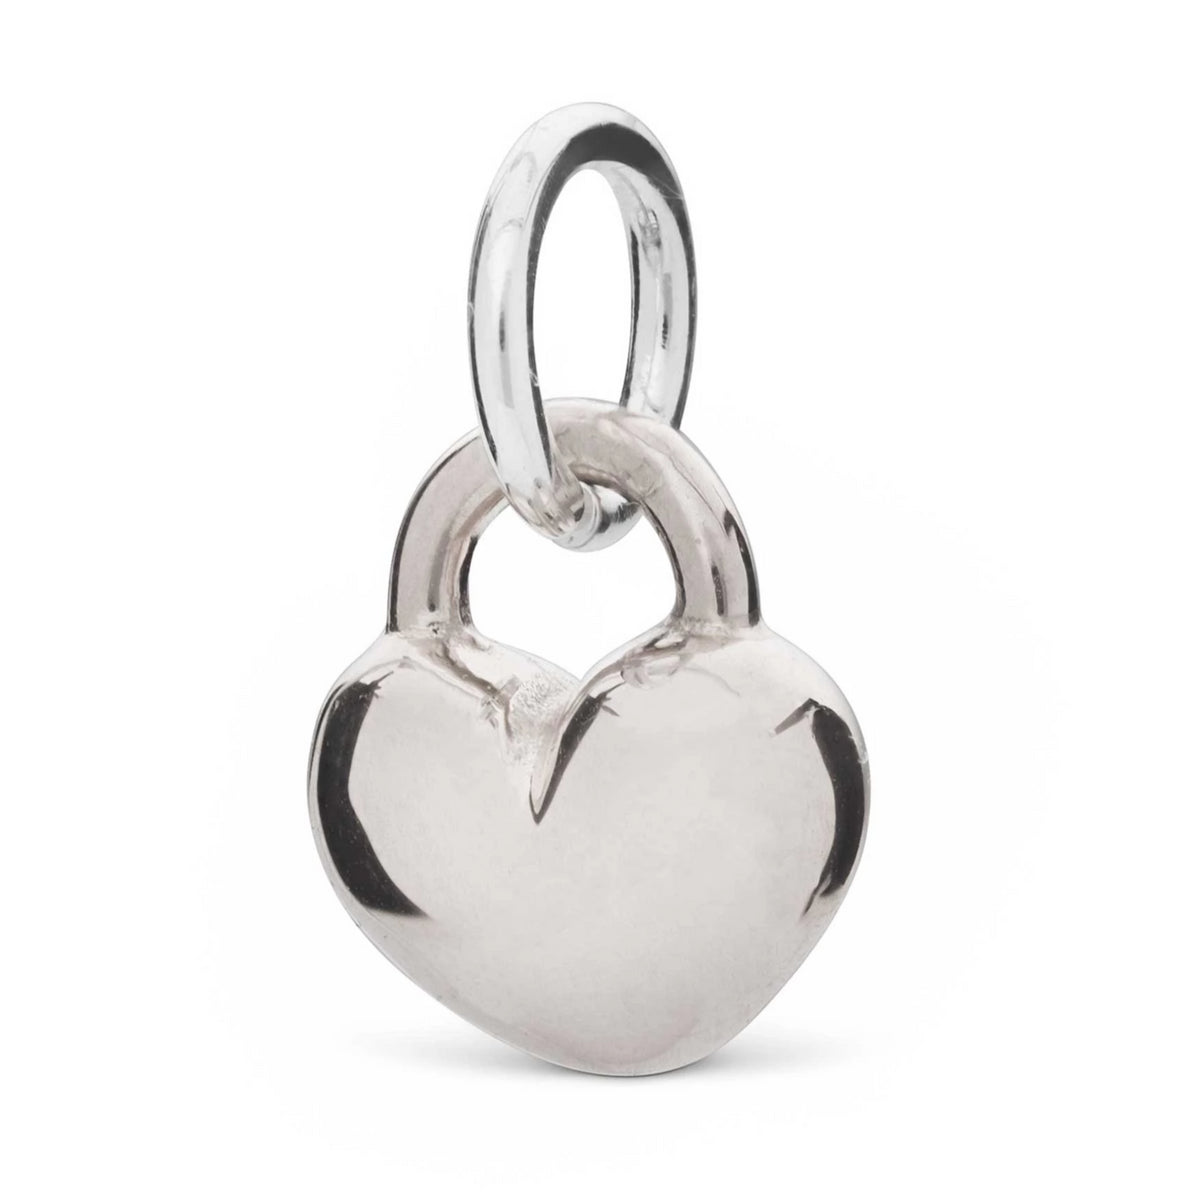 Solid silver love heart bracelet charm romantic gift scarlett jewellery